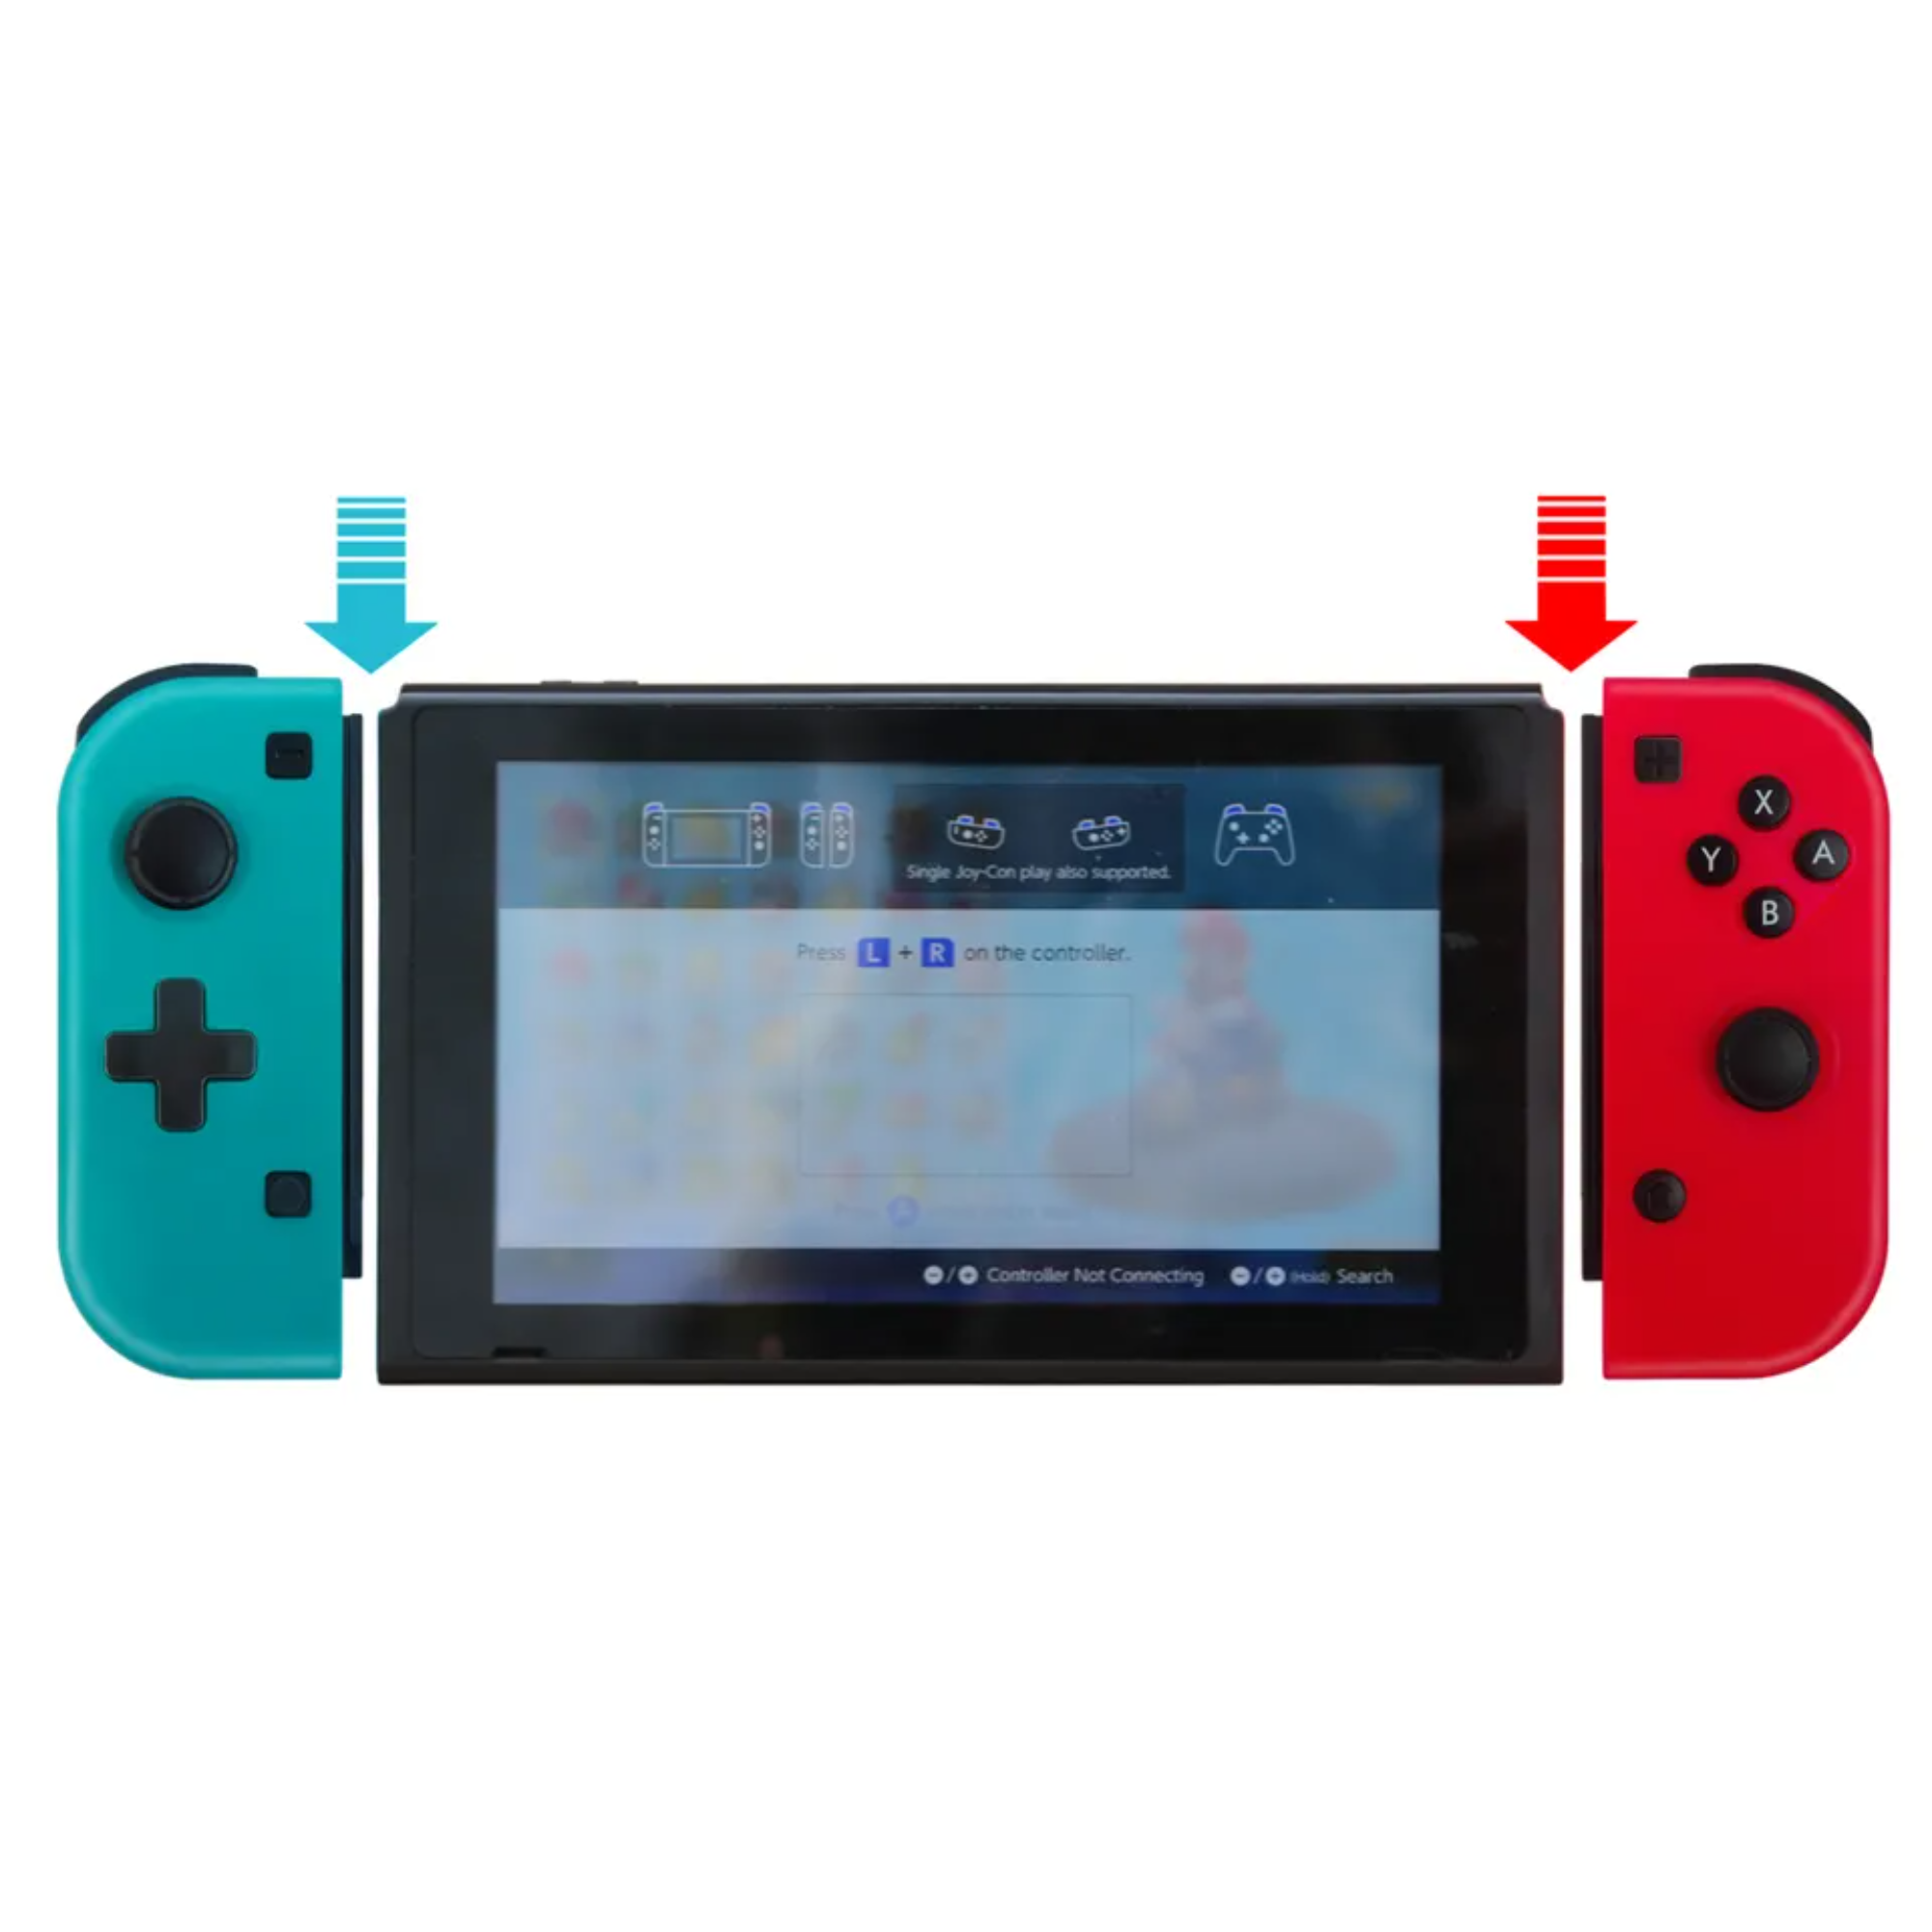 Ergonomischer Switch-Controller BLUE CHILLI Nintendo mit Vibrationstechnologie